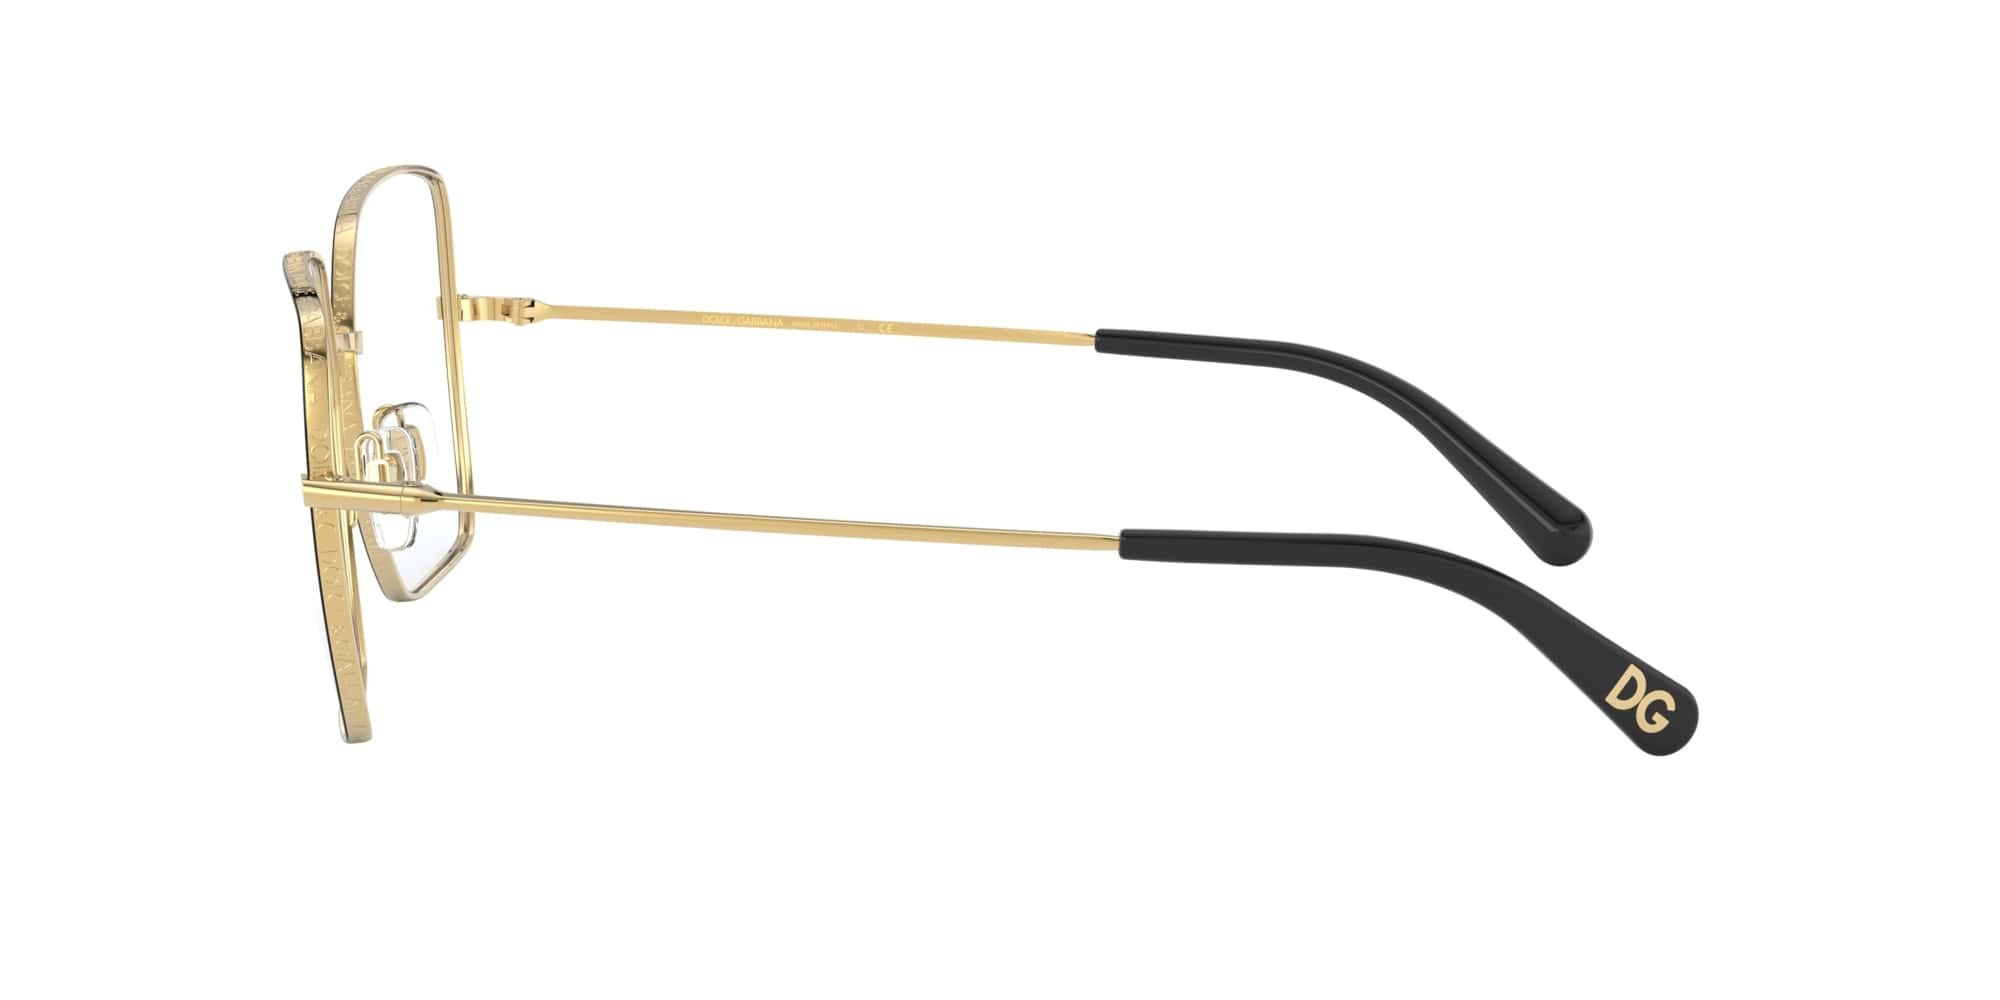 Das Bild zeigt die Korrektionsbrille DG1323 1334 von der Marke D&G in schwarz-gold.